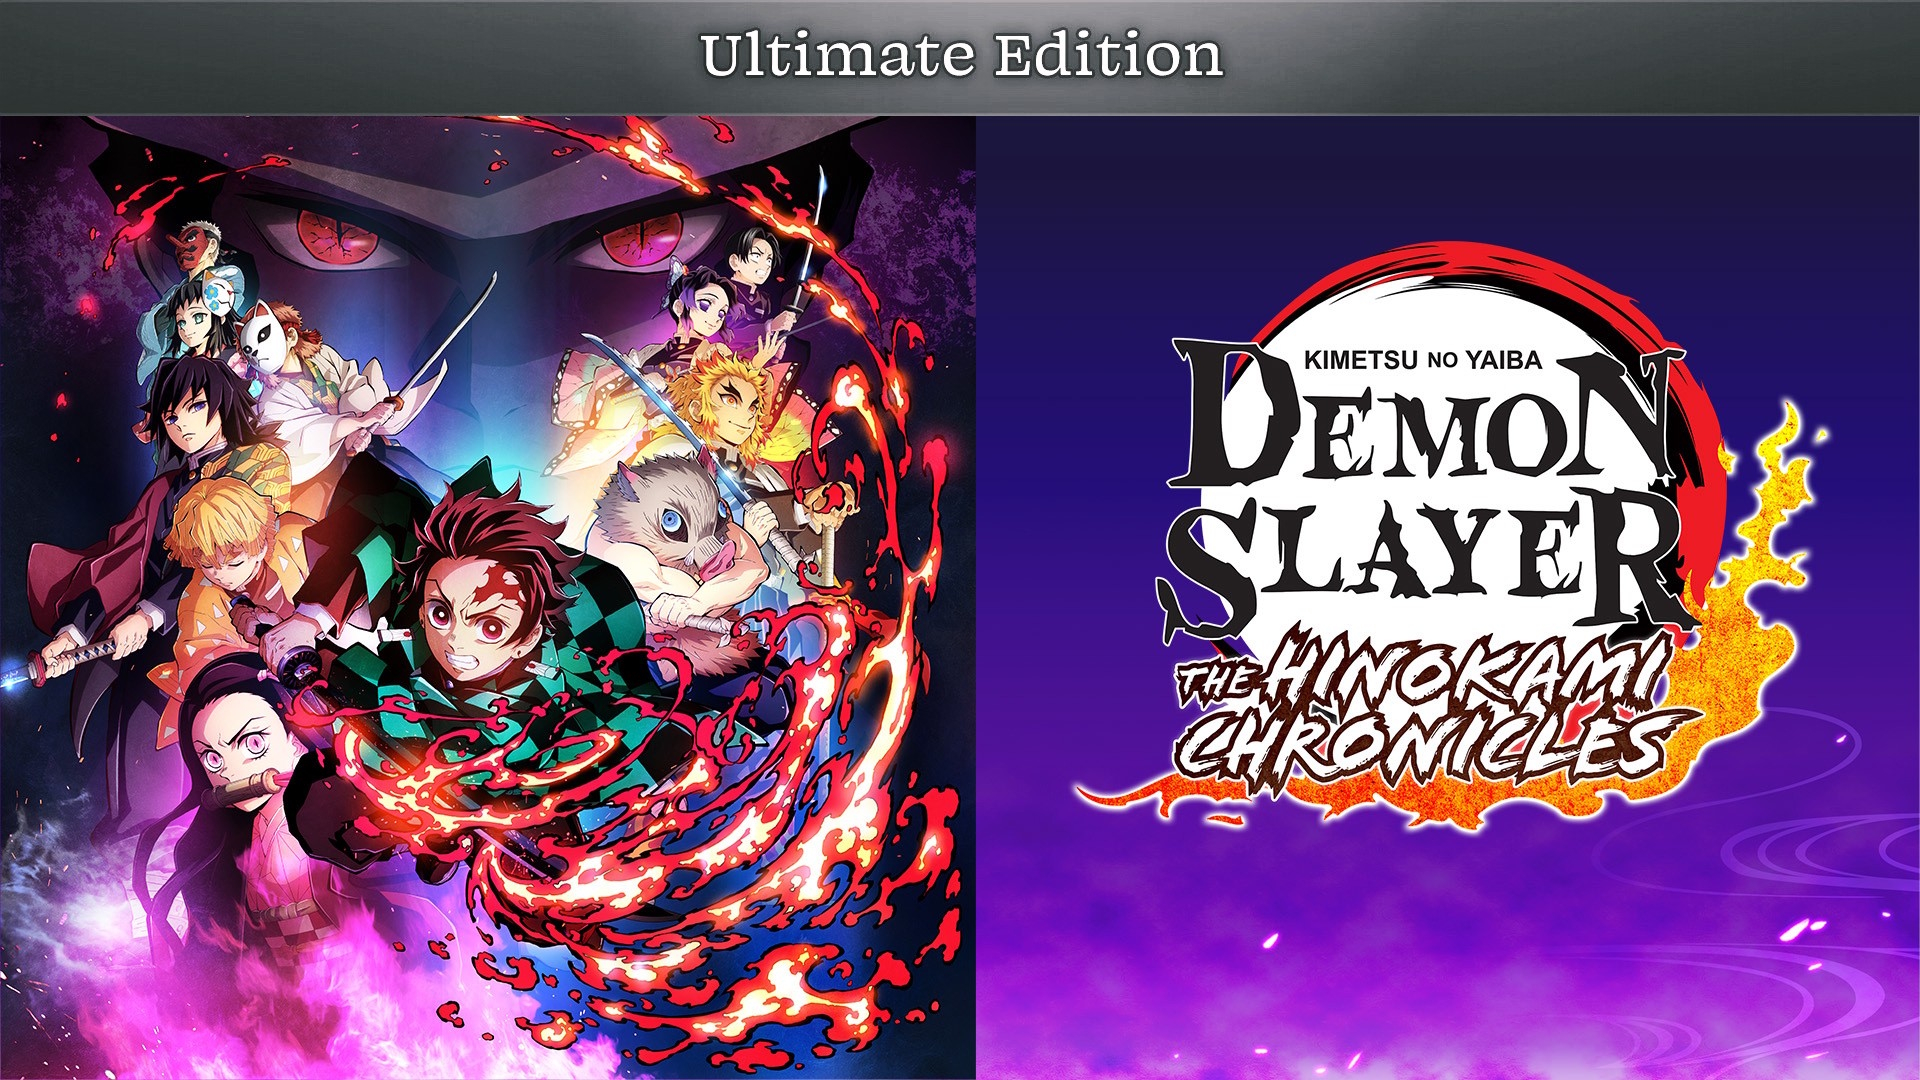 SEASON 3 DLC FOR DEMON SLAYER HINOKAMI CHRONICLES?! 